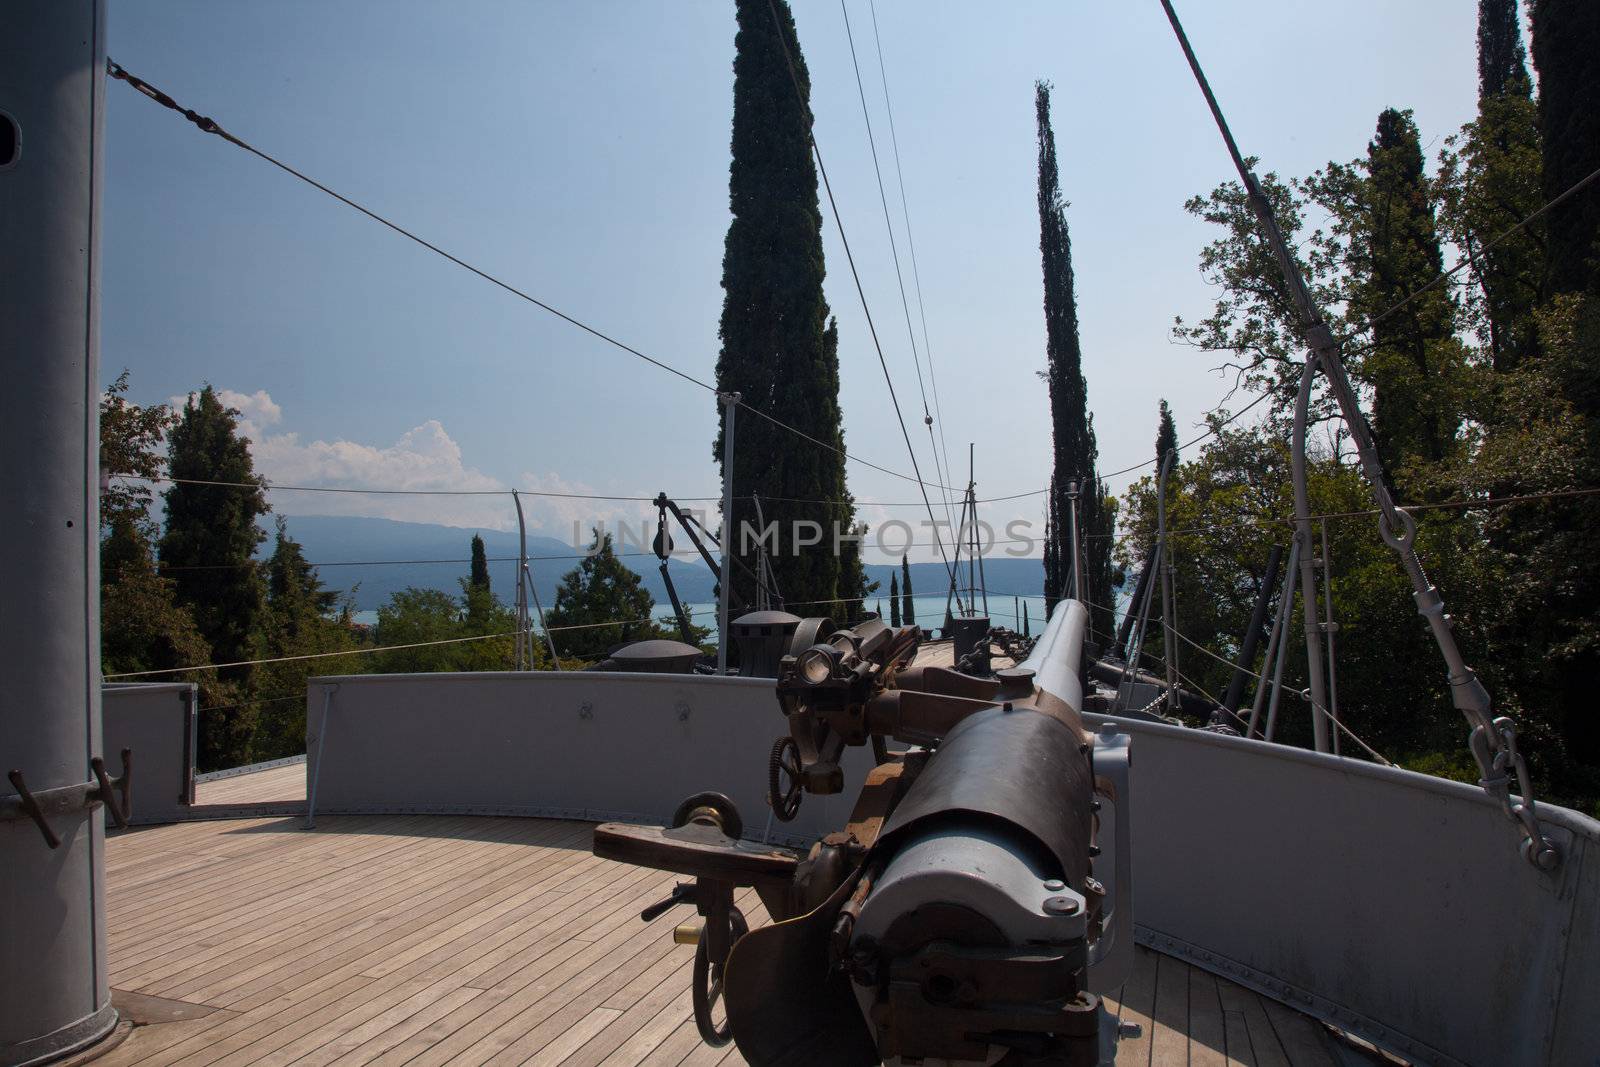 Puglia Gun Deck by steheap